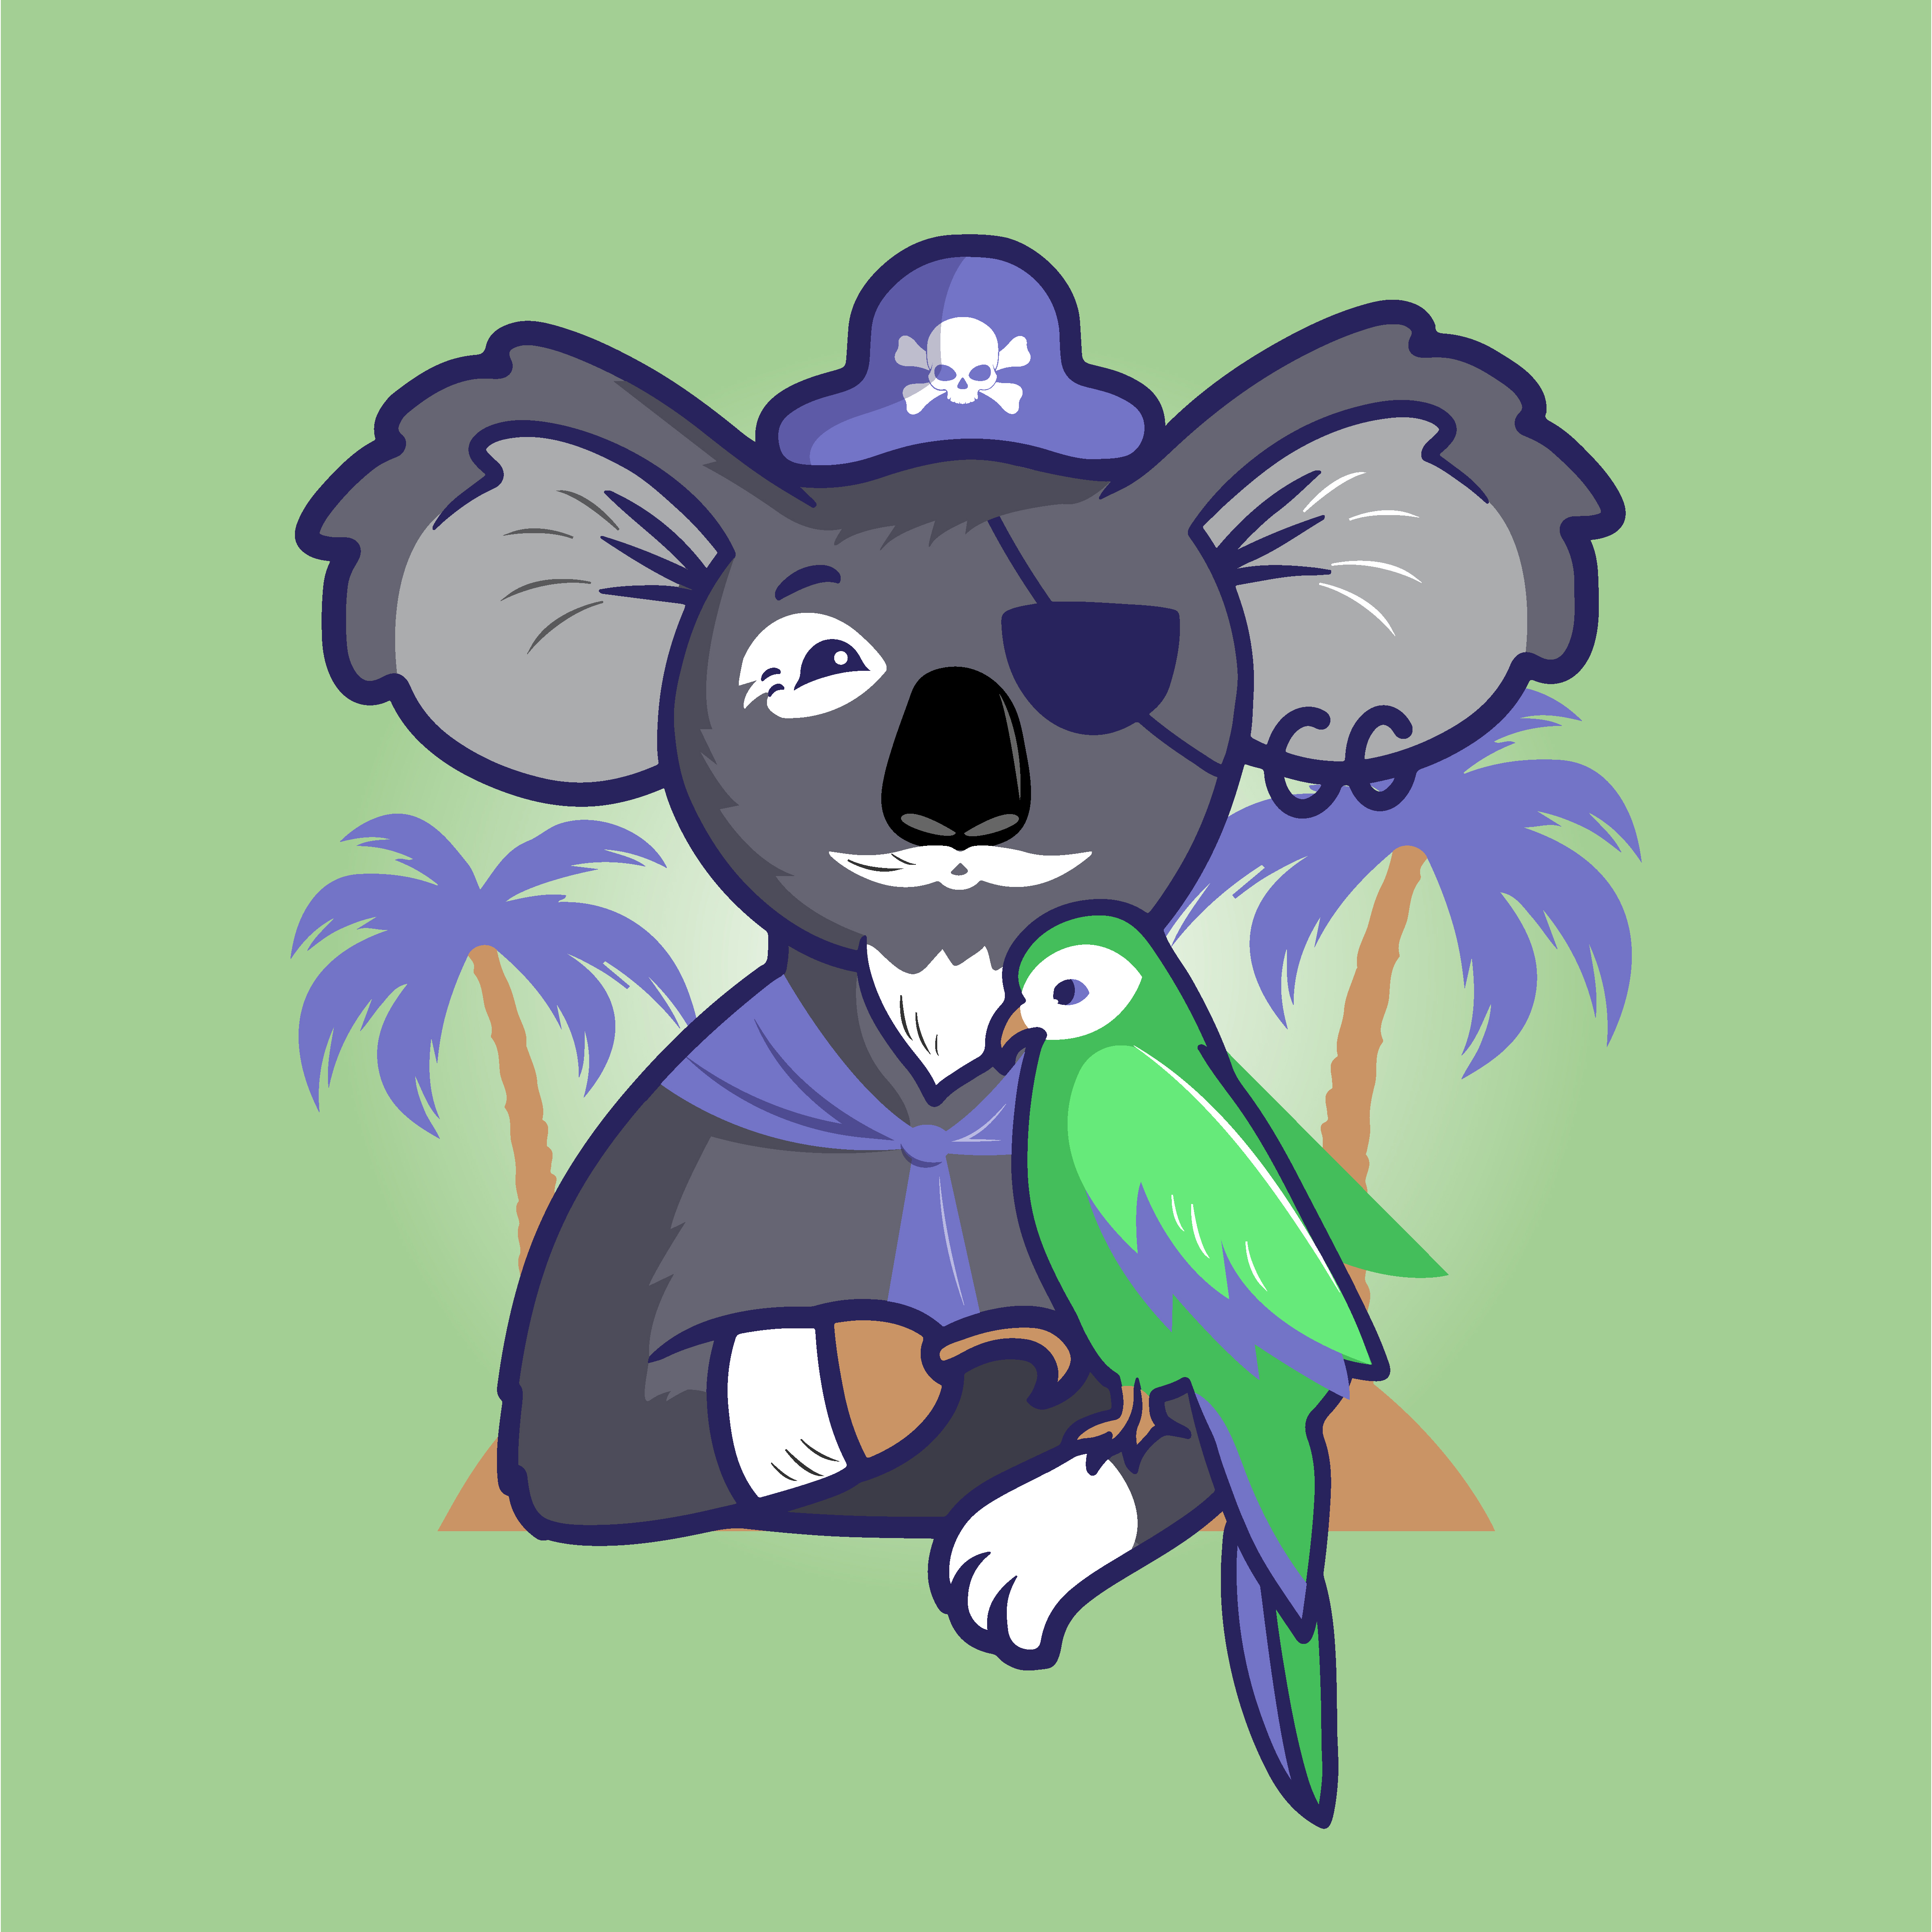 Koala pirate